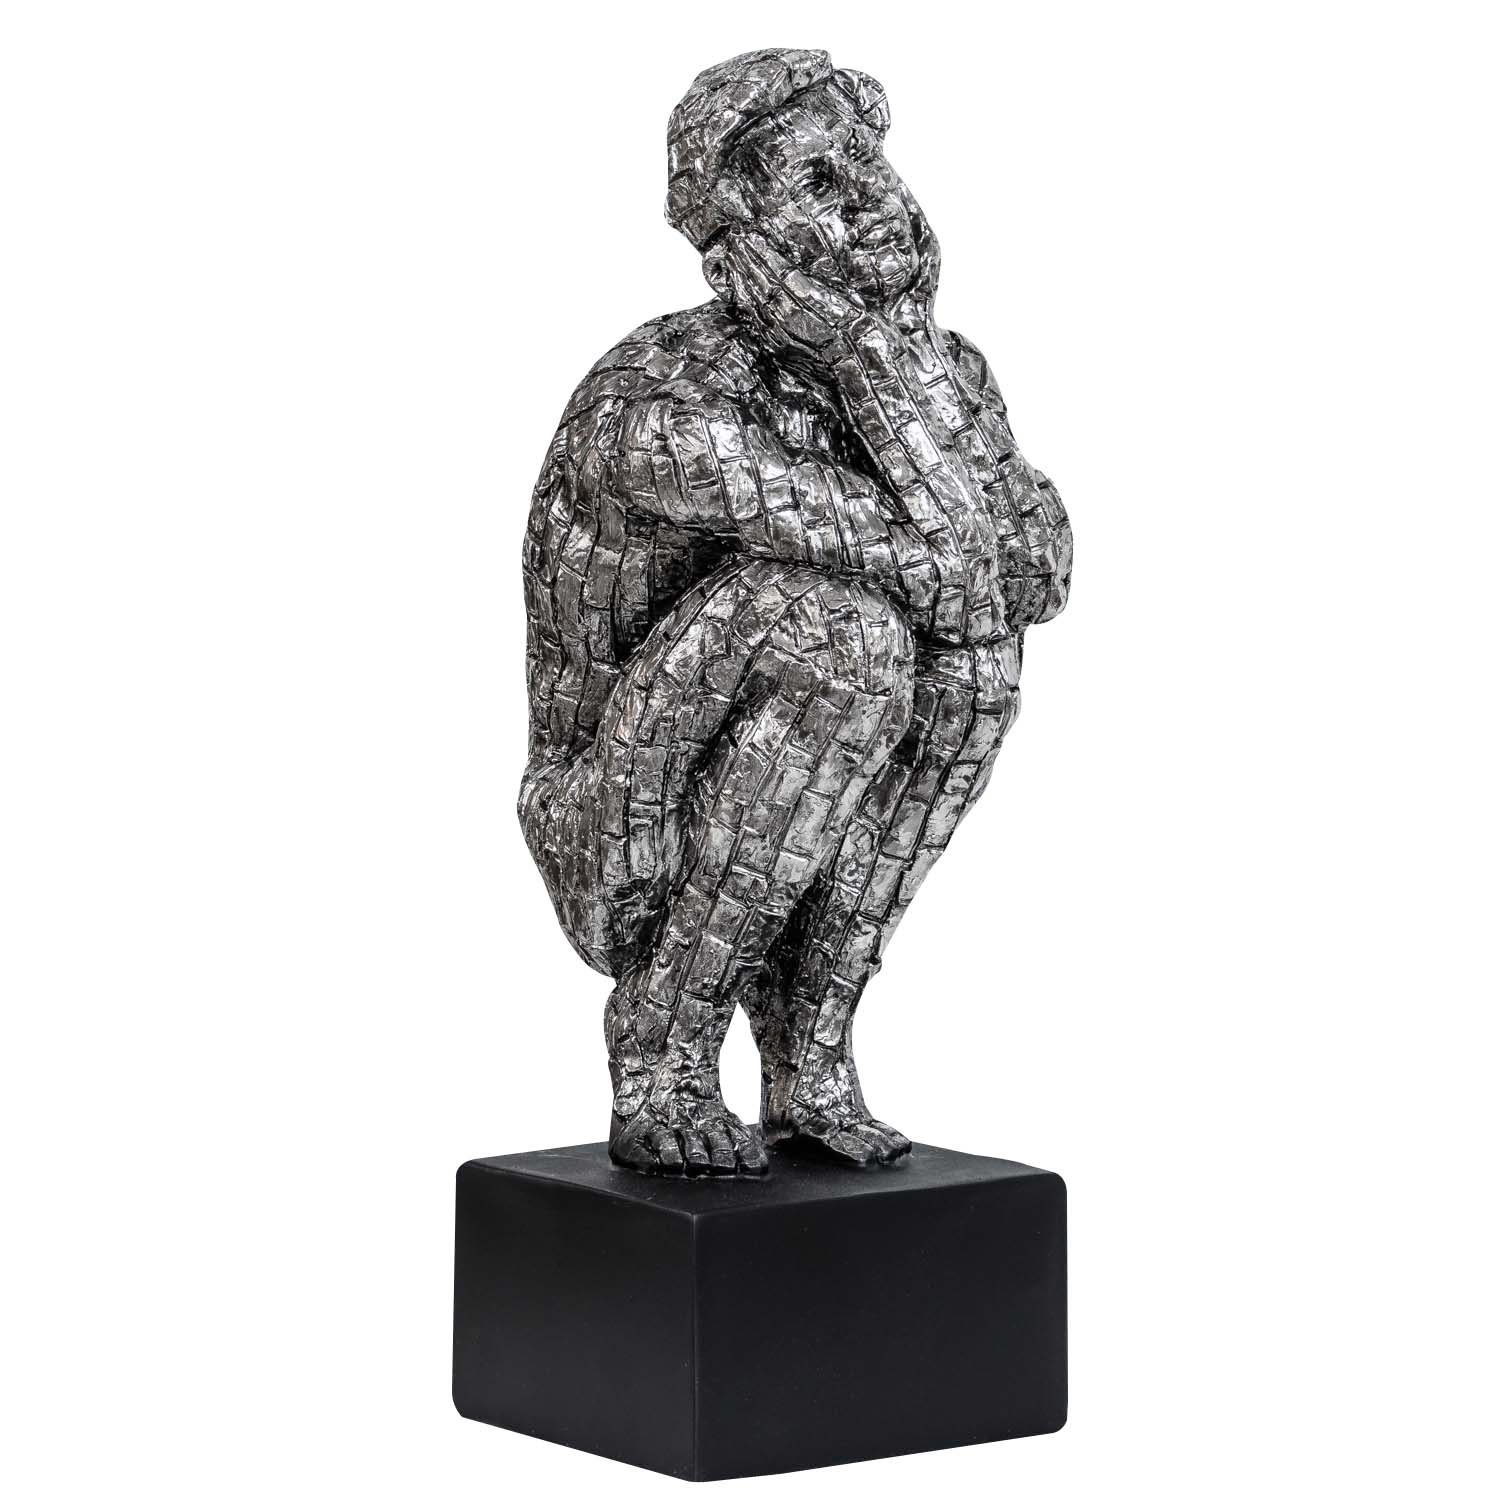 Aubaho Dekofigur Skulptur Mann Figur Kunst Dekoration Antik-Stil - 35cm